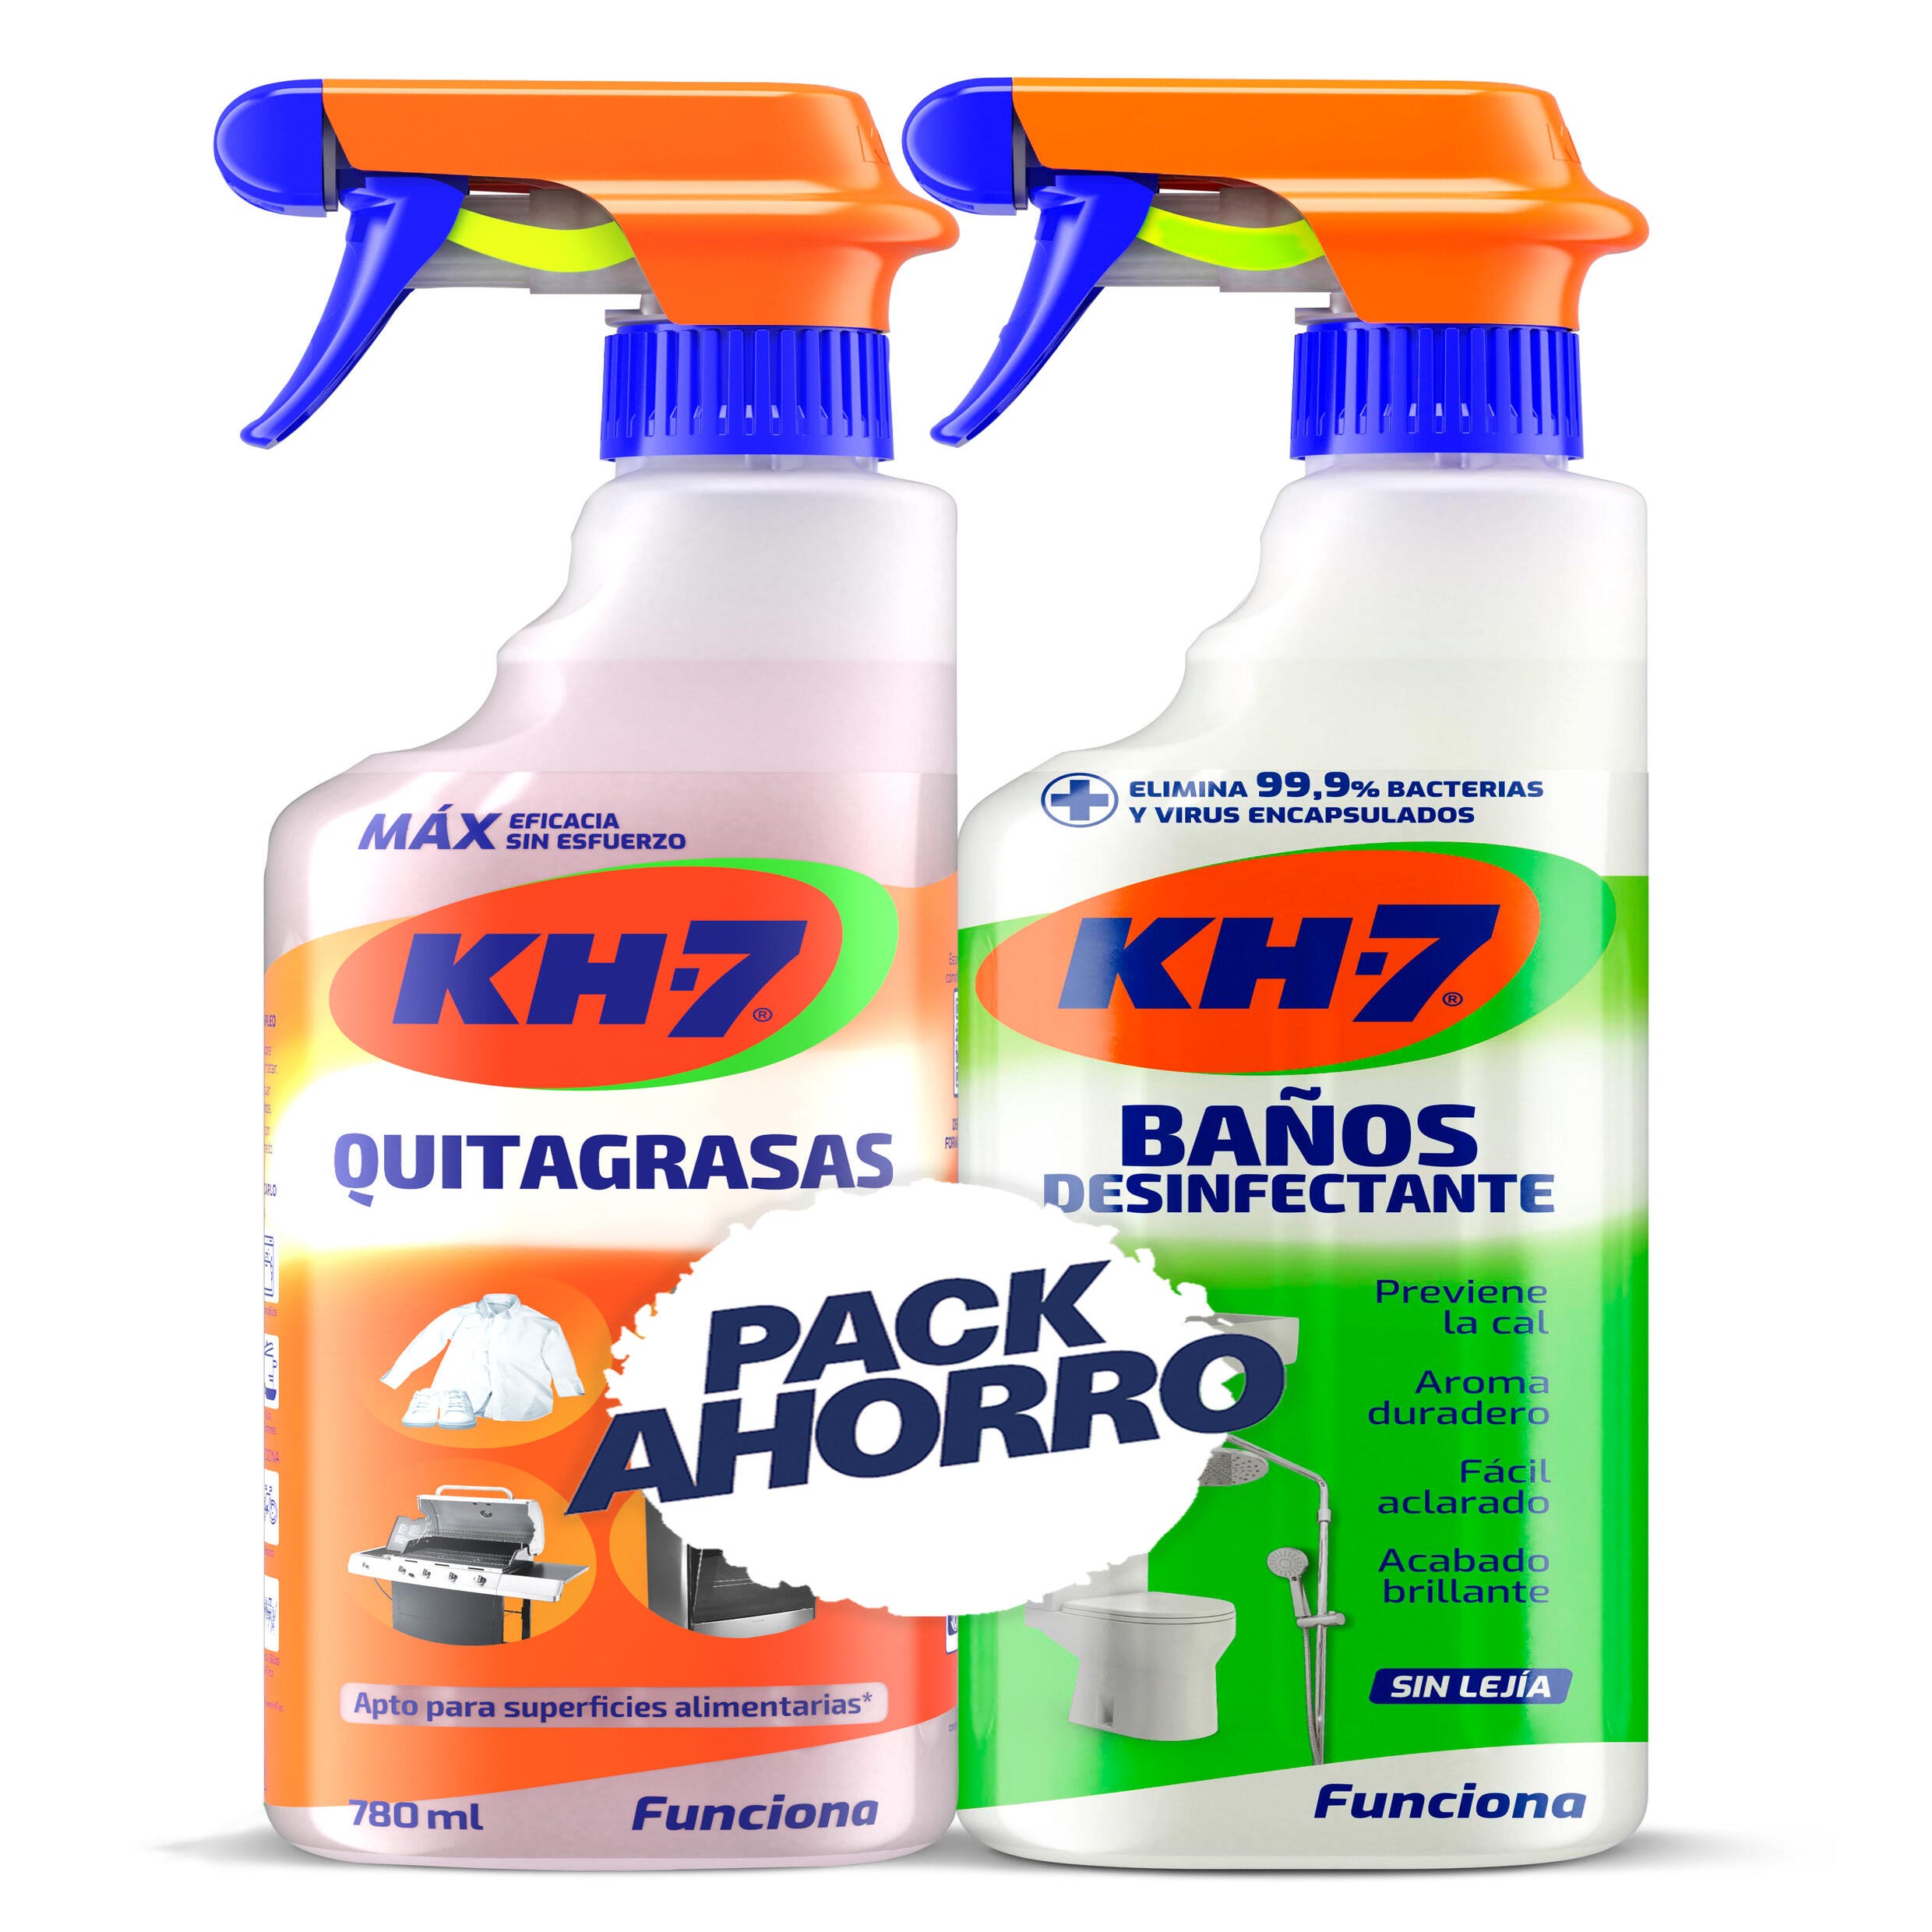 Pack limpiadores KH7 quitagrasas y baños desinfectantes 0,75L